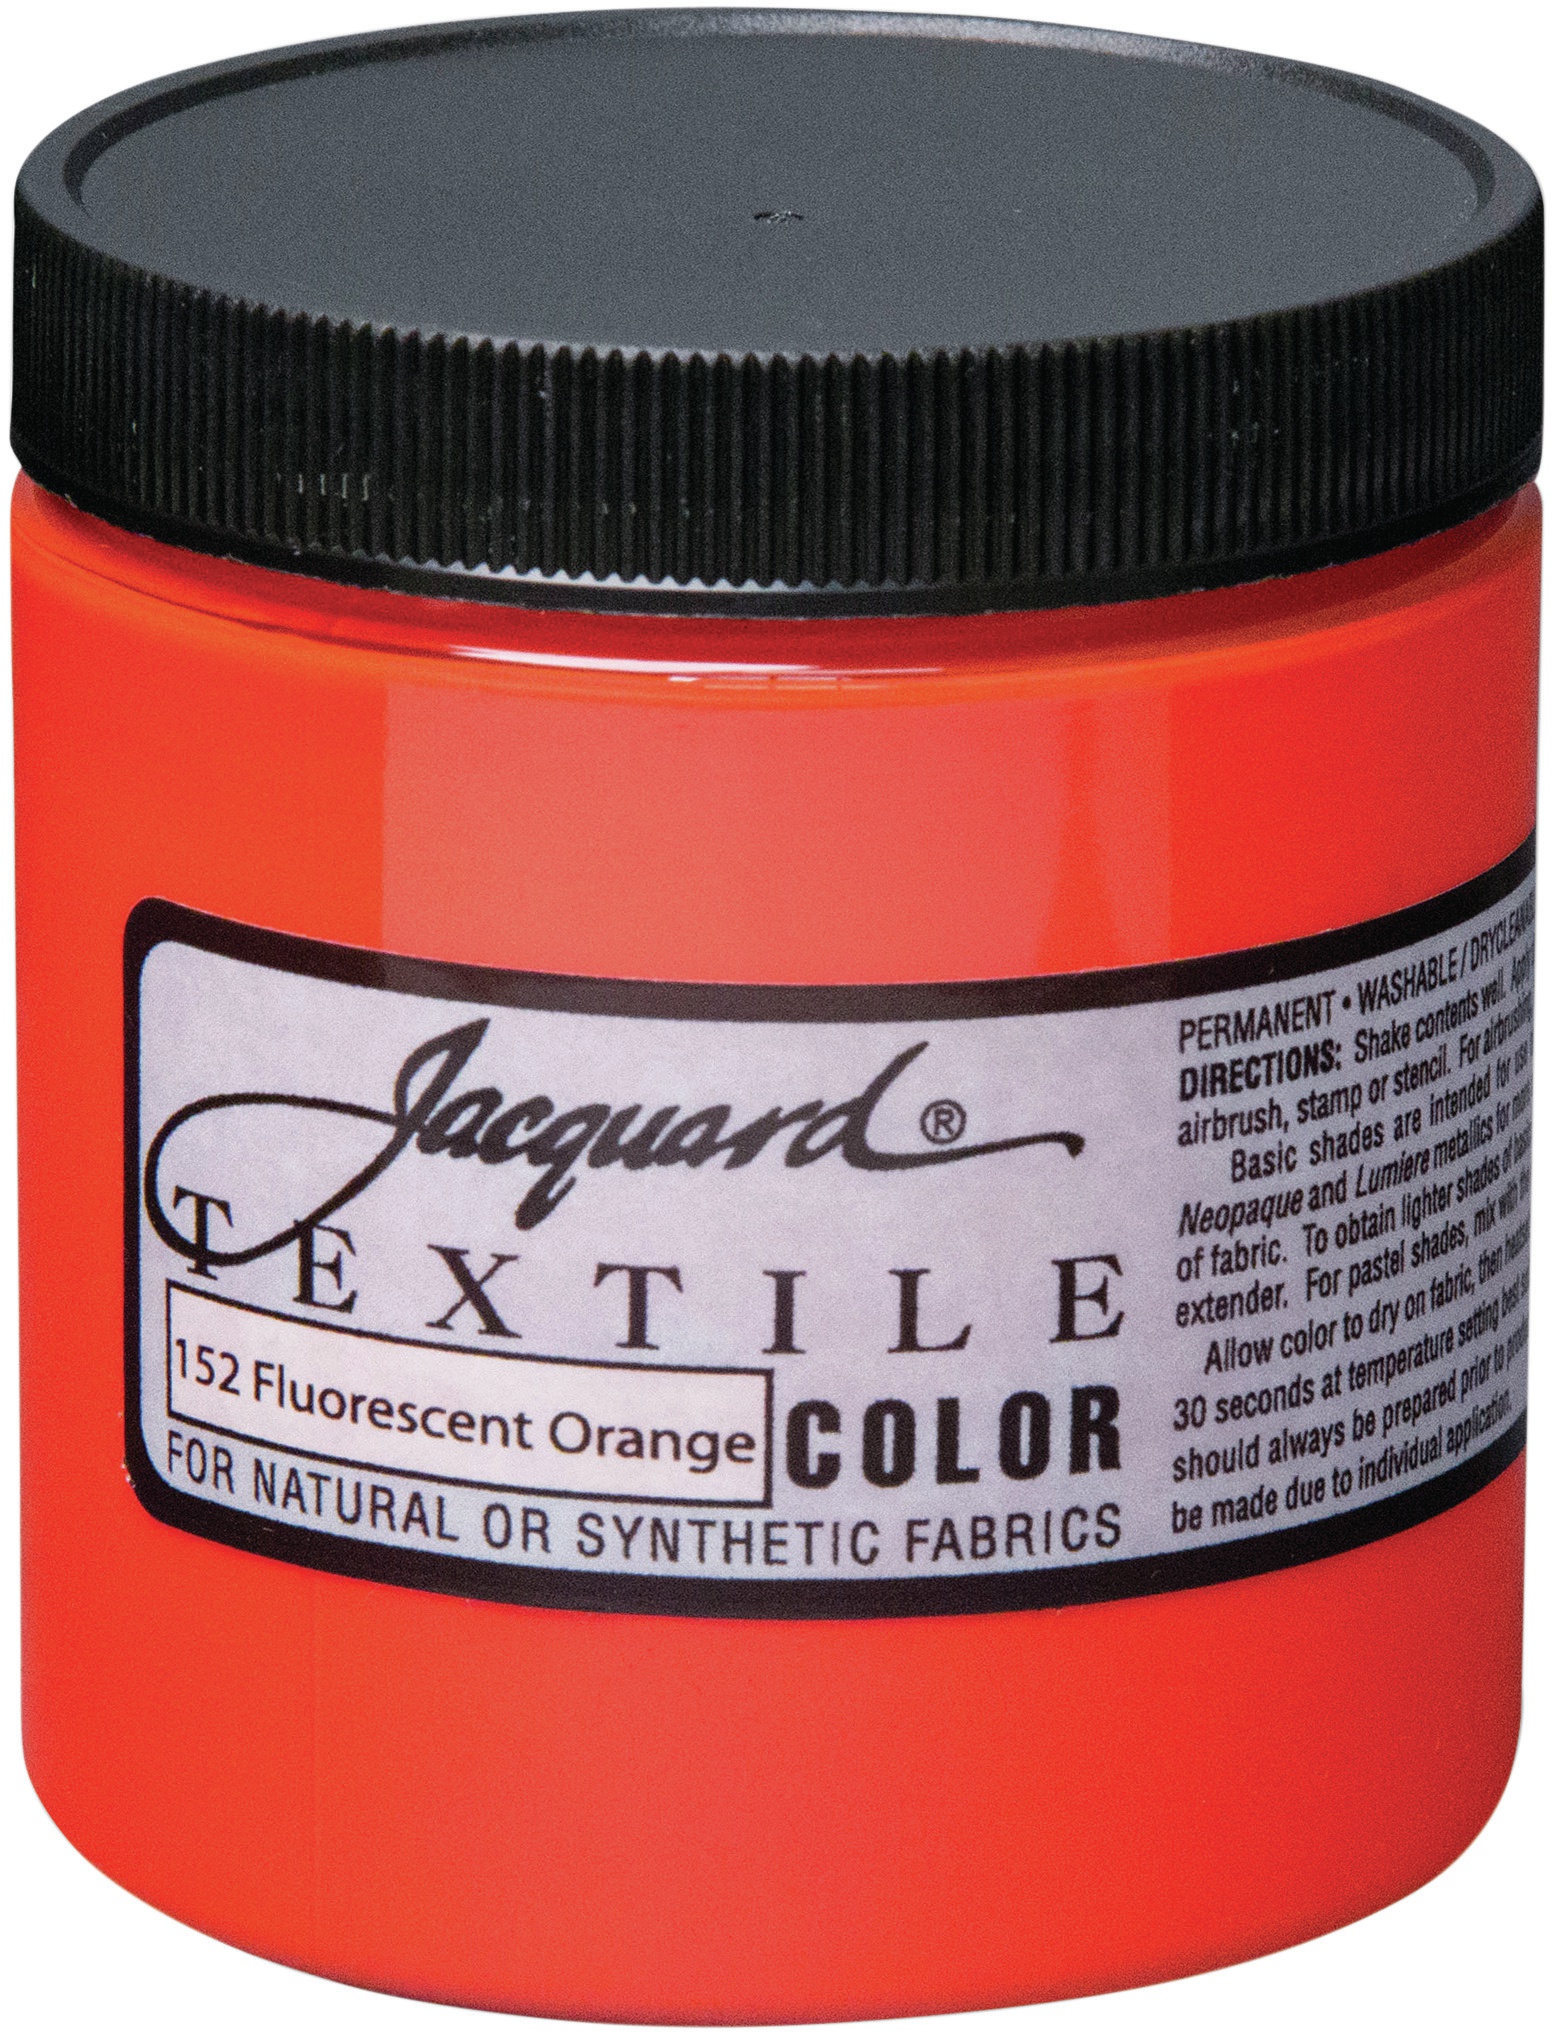 Jacquard Textile Color Fabric Paint 8oz-Fluorescent Orange | eBay